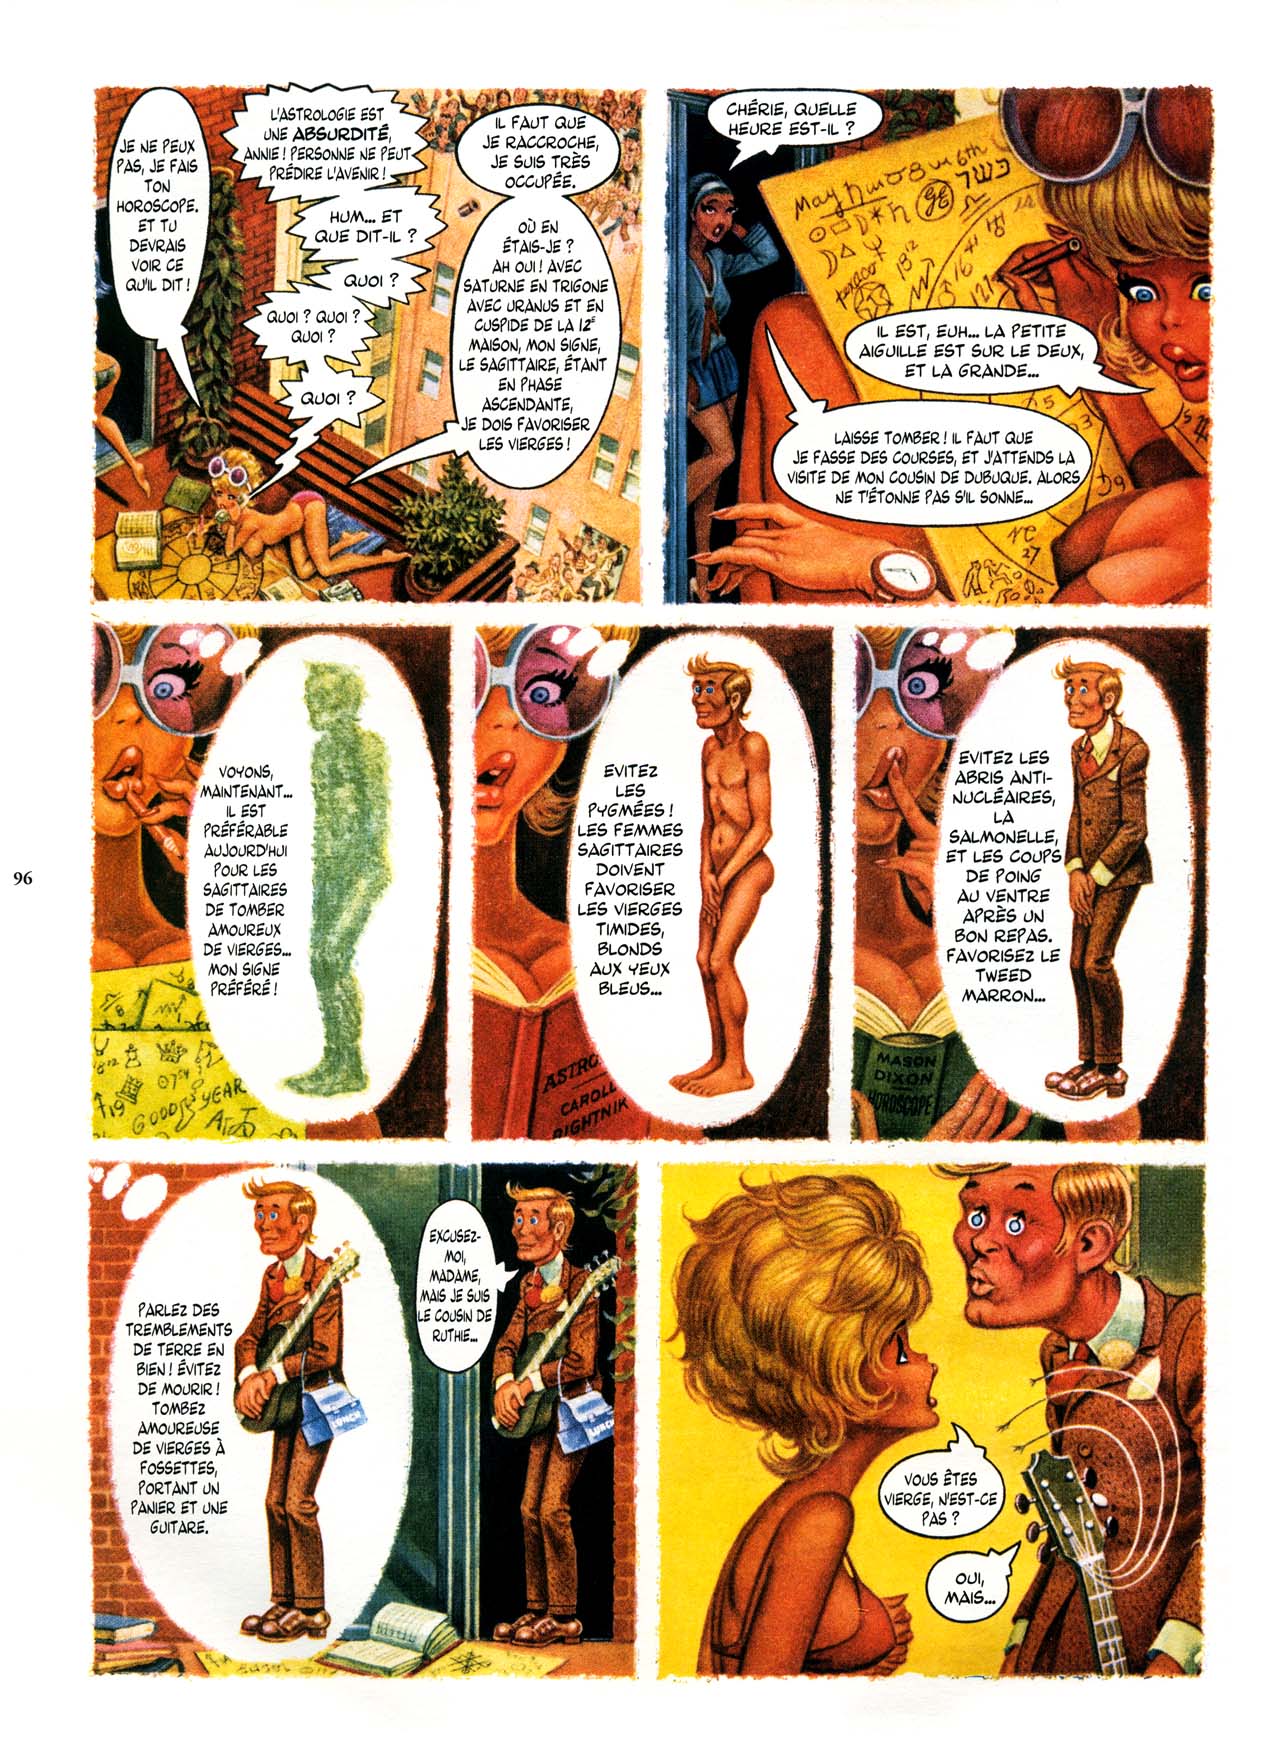 Playboys Little Annie Fanny Vol. 2 - 1965-1970 numero d'image 96